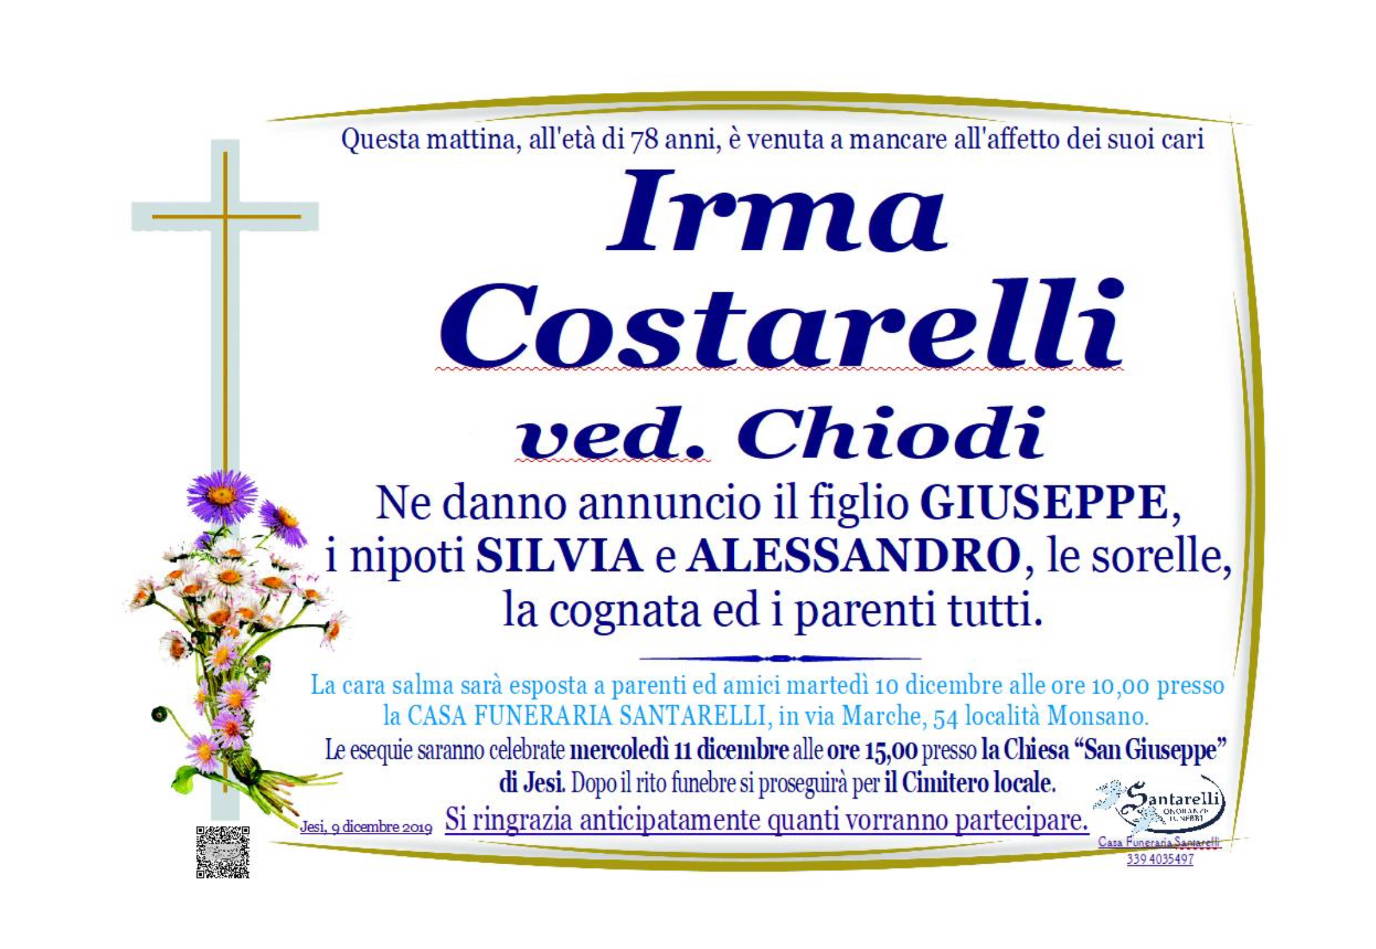 Irma Costarelli